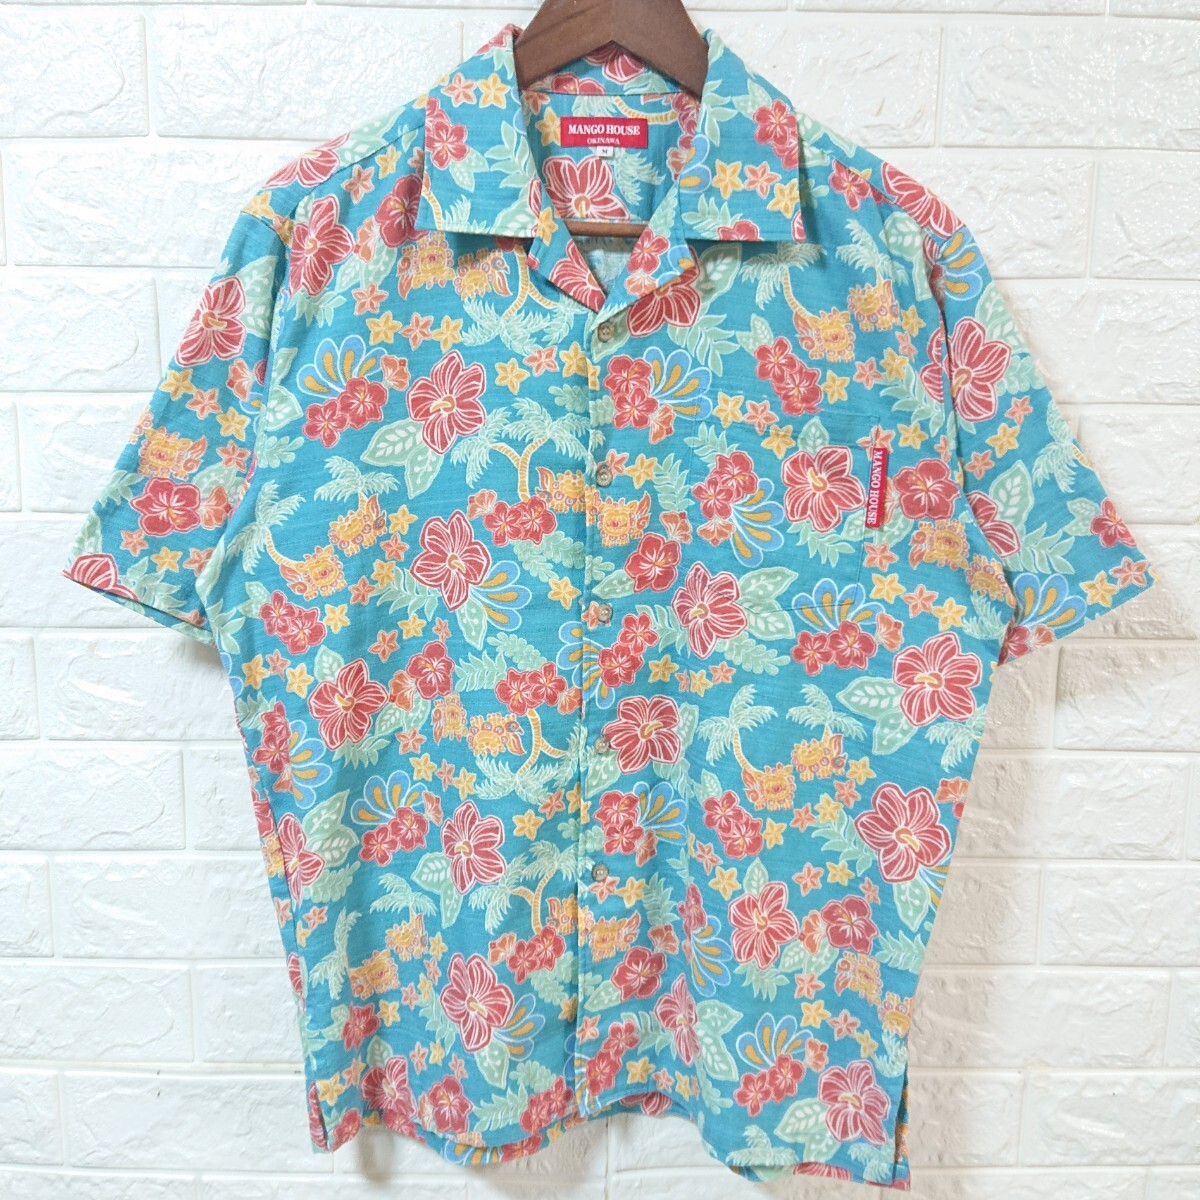 【日本製】美品 MANGO HOUSE マンゴーハウス 沖縄かりゆし シーサー 花柄 オープンカラー アロハシャツ Mサイズ 美カラー aloha shirtの画像2